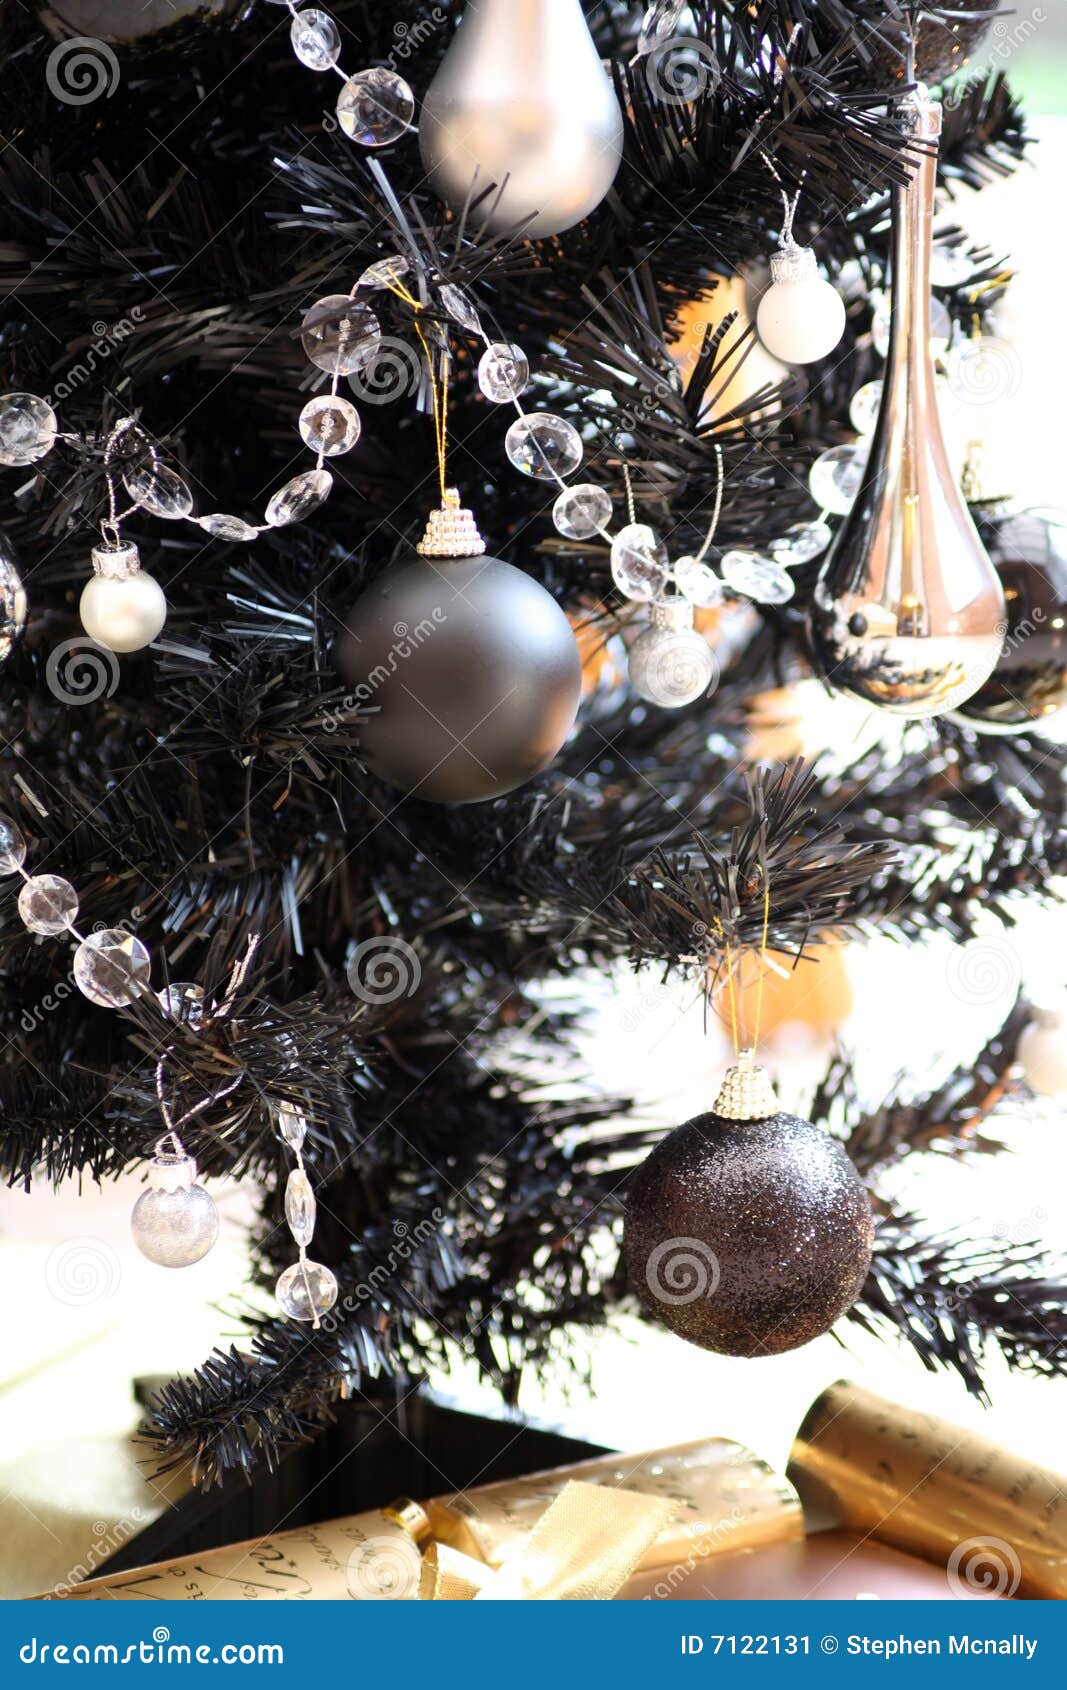 Albero Di Natale Nero.Albero Di Natale Nero Immagine Stock Immagine Di Argento 7122131